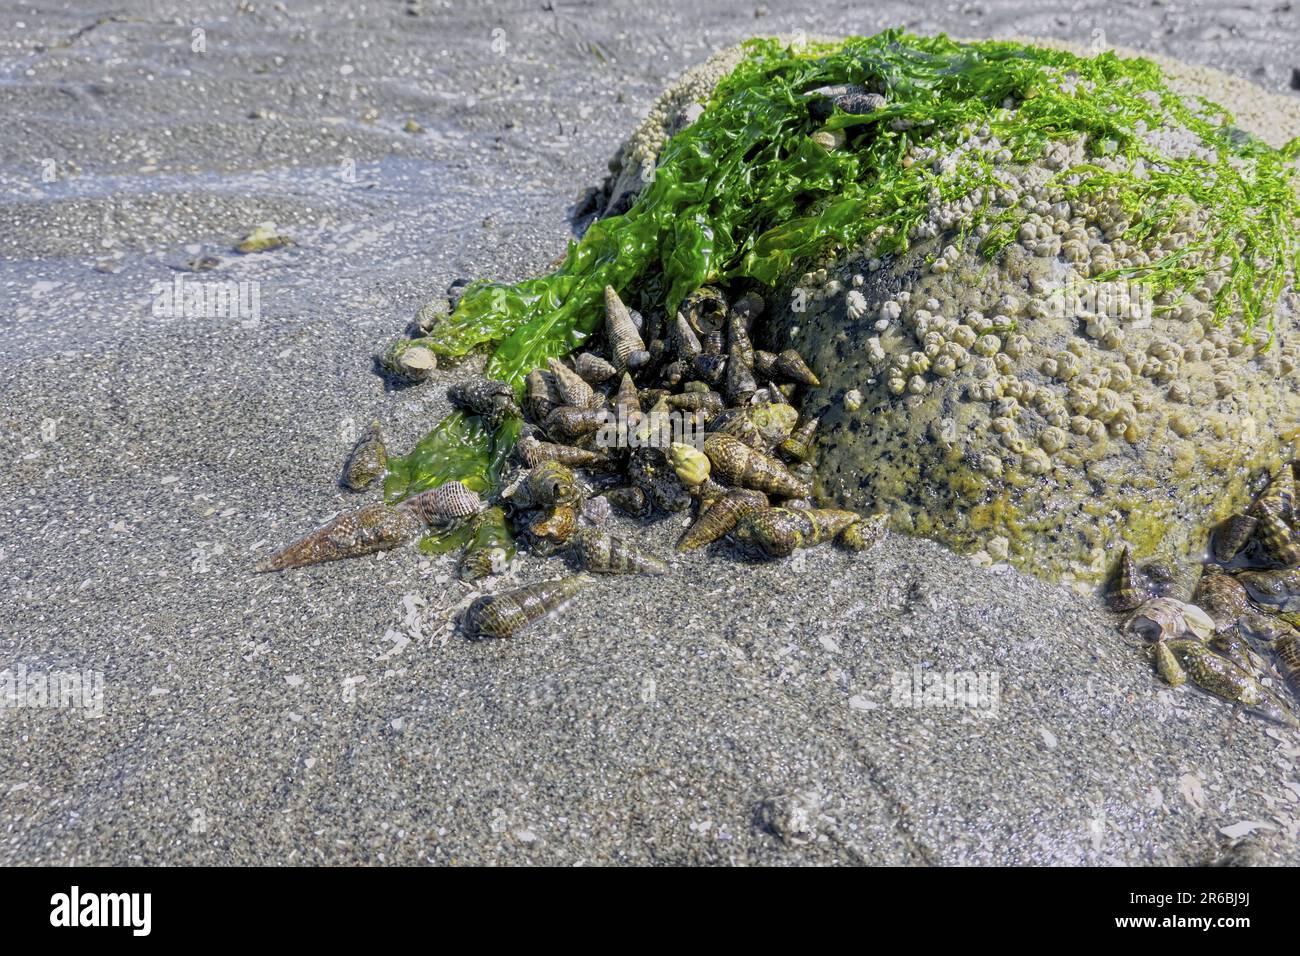 Schlammschnecken (Batillaria cumingi) - Muscheln, die sich um einen mit Salat bedeckten Felsen (Ulva lacgtcuca) ansammeln - Crescent Beach, B.C., Kanada. Stockfoto